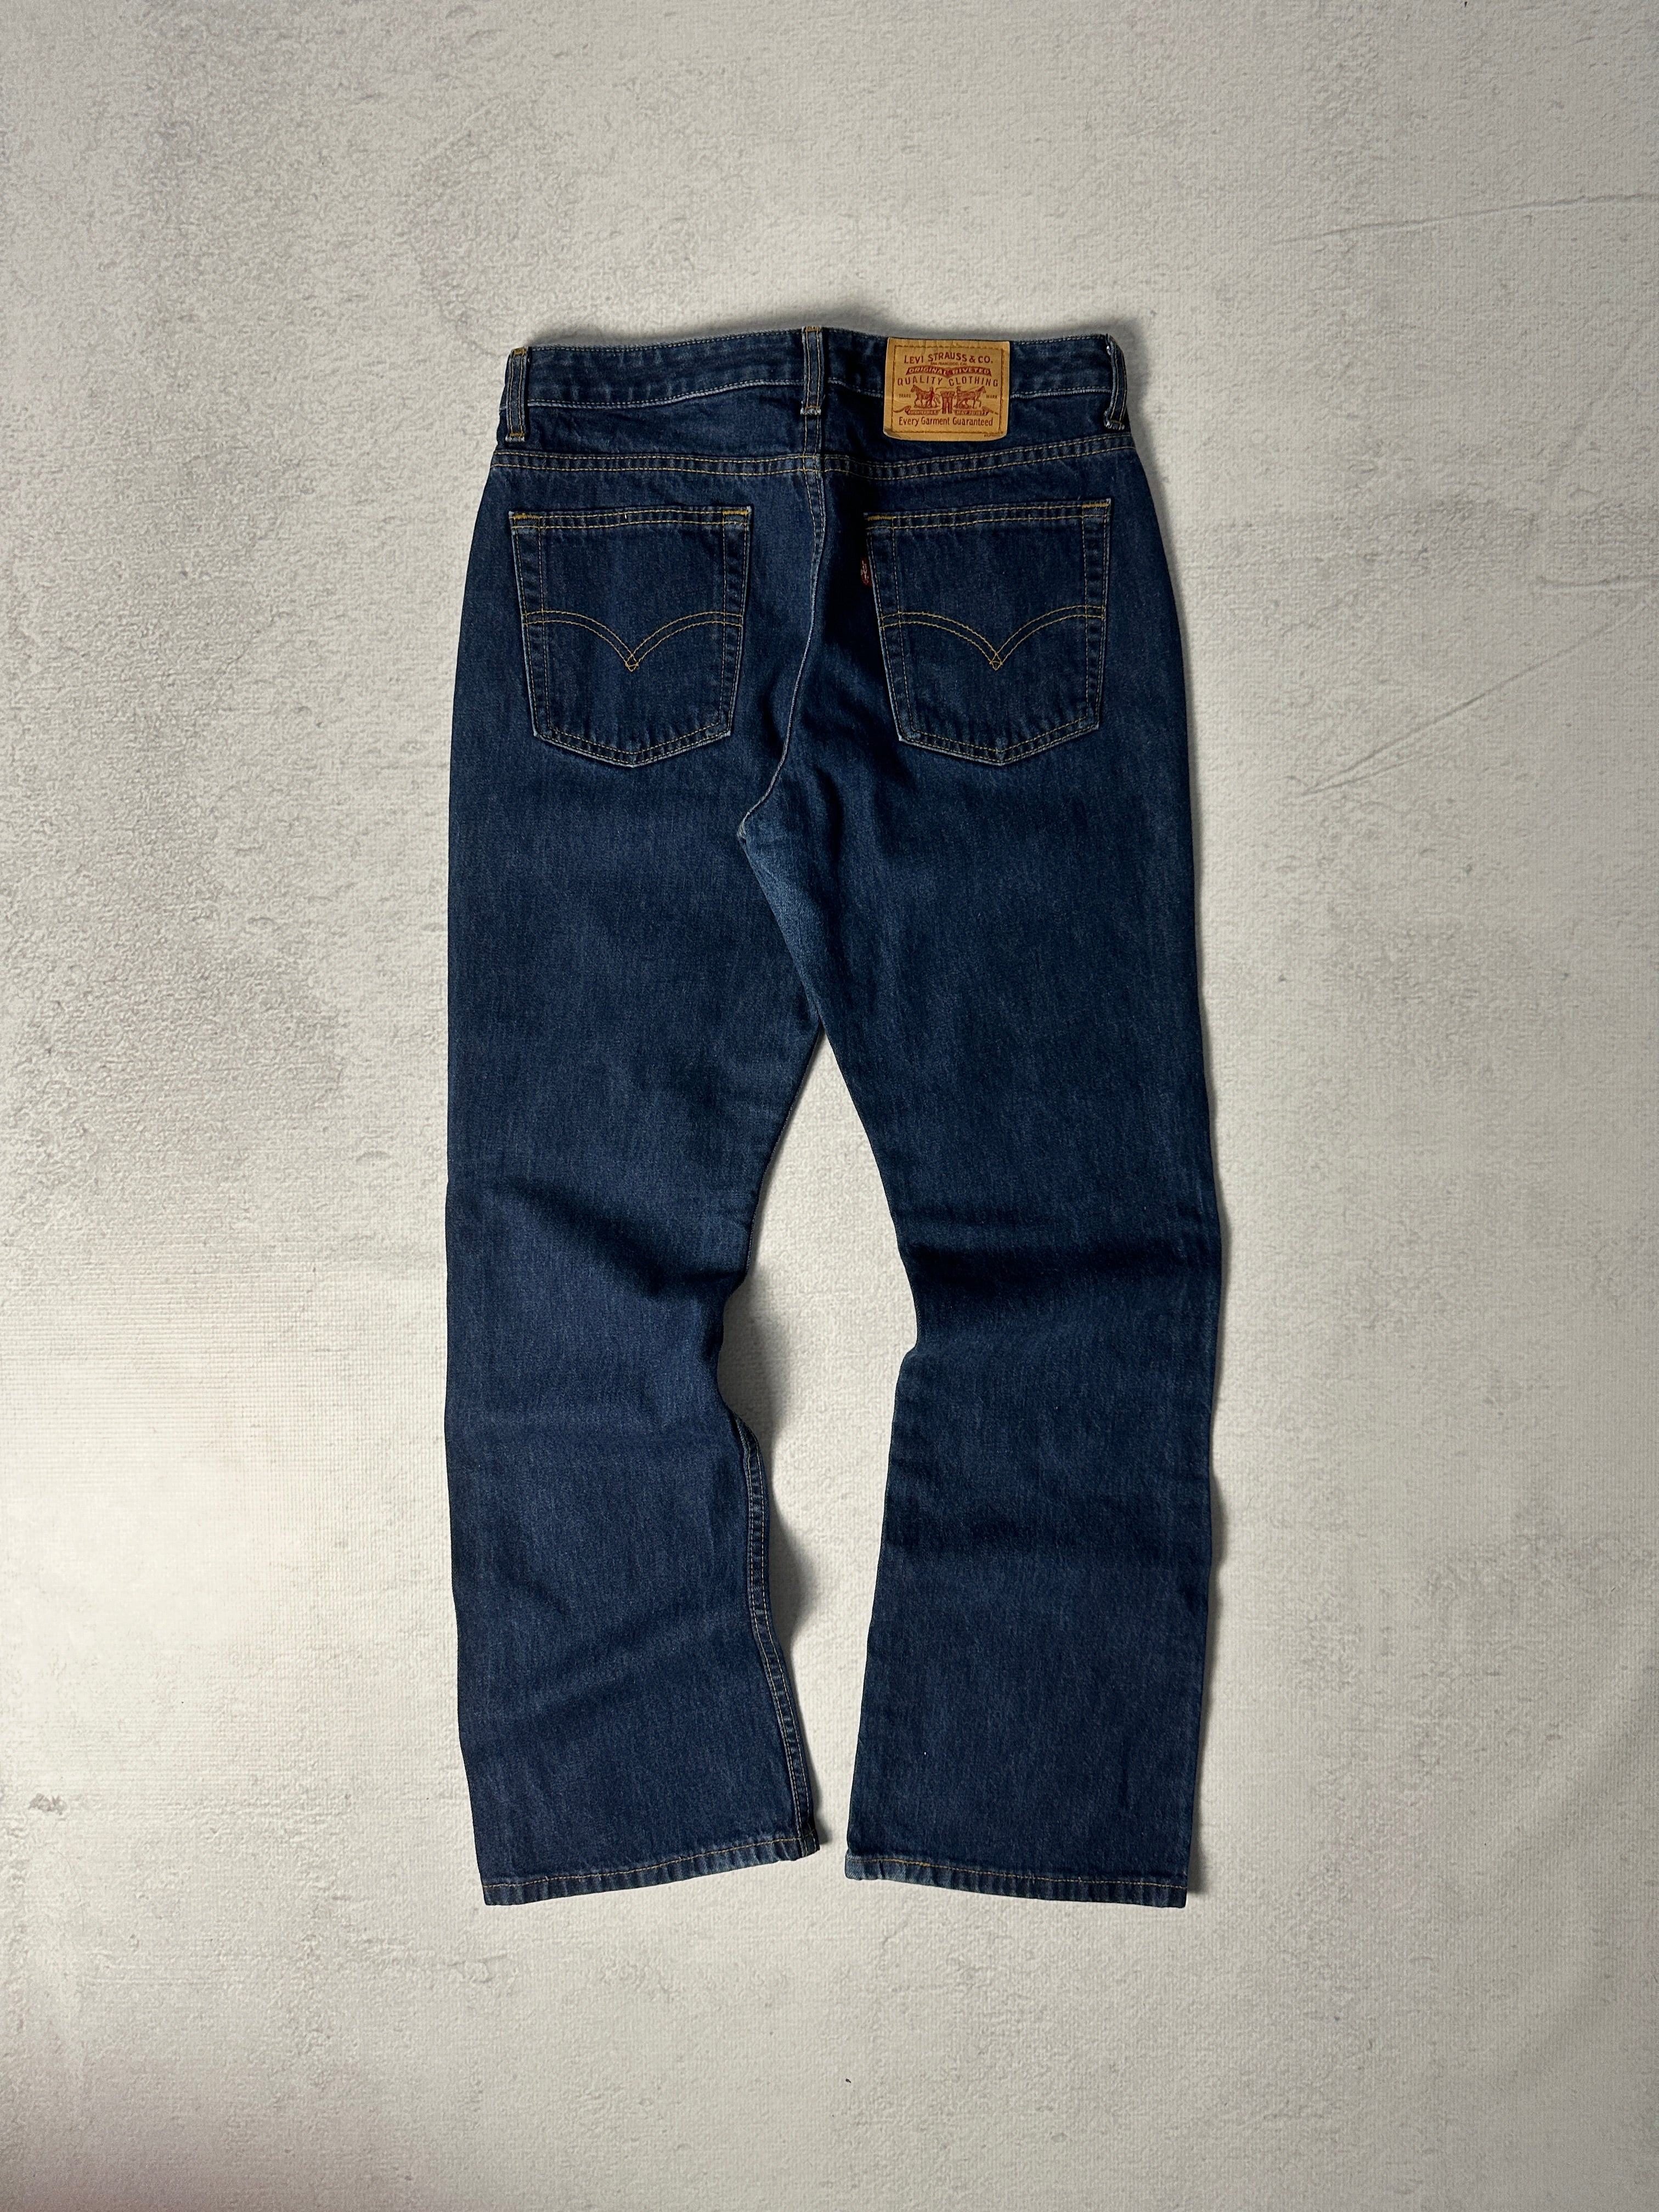 Vintage Levis Jeans - Women’s 34 X 32